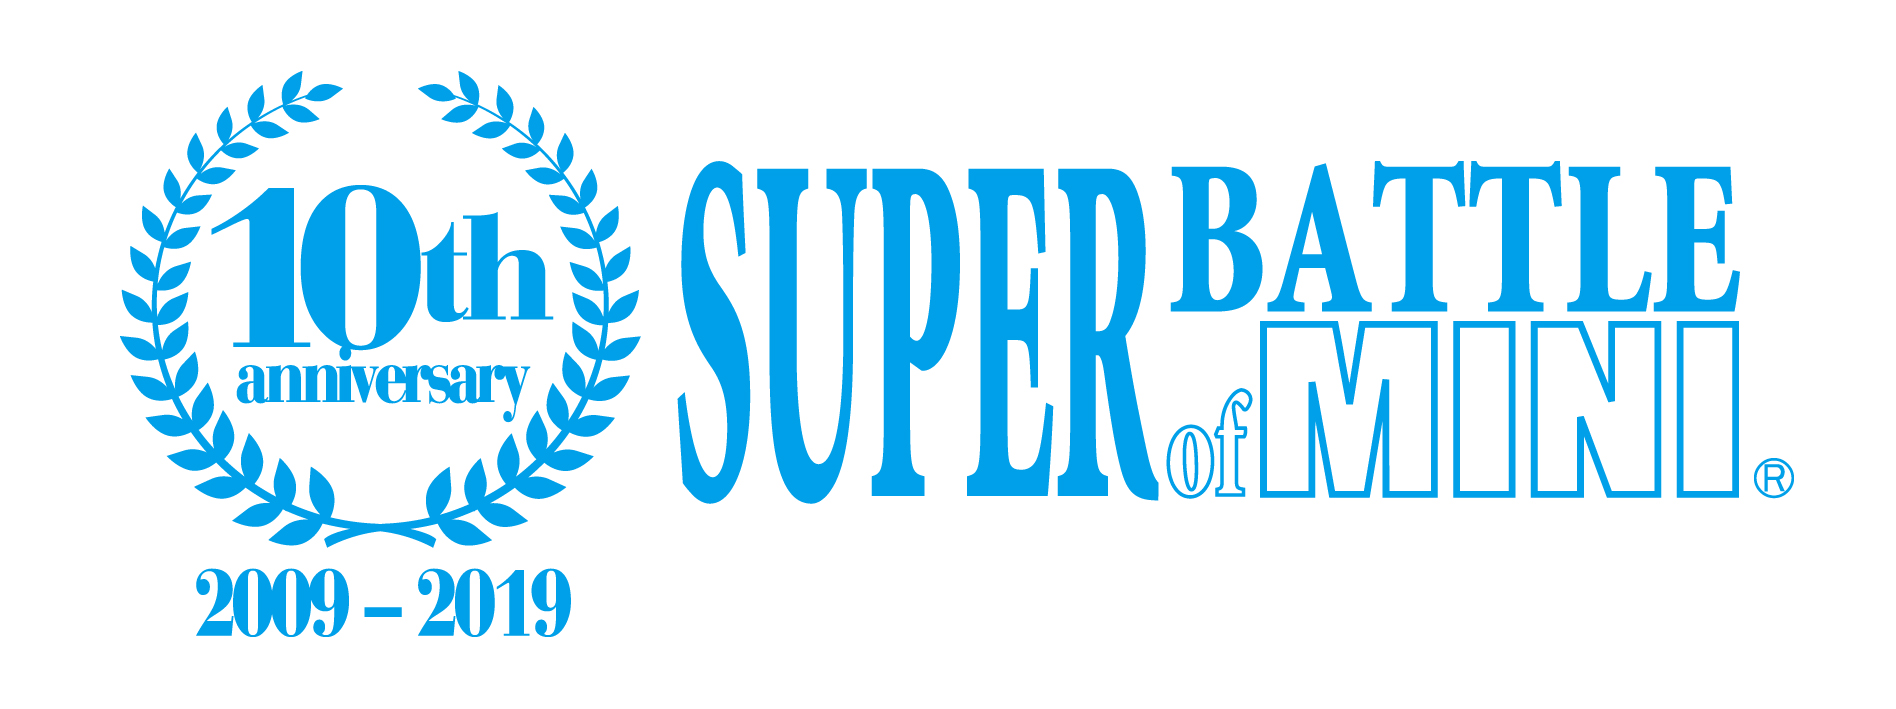 【更新】SUPER BATTLE of MINI 第 4 戦 (最終戦)  タイムスケジュール